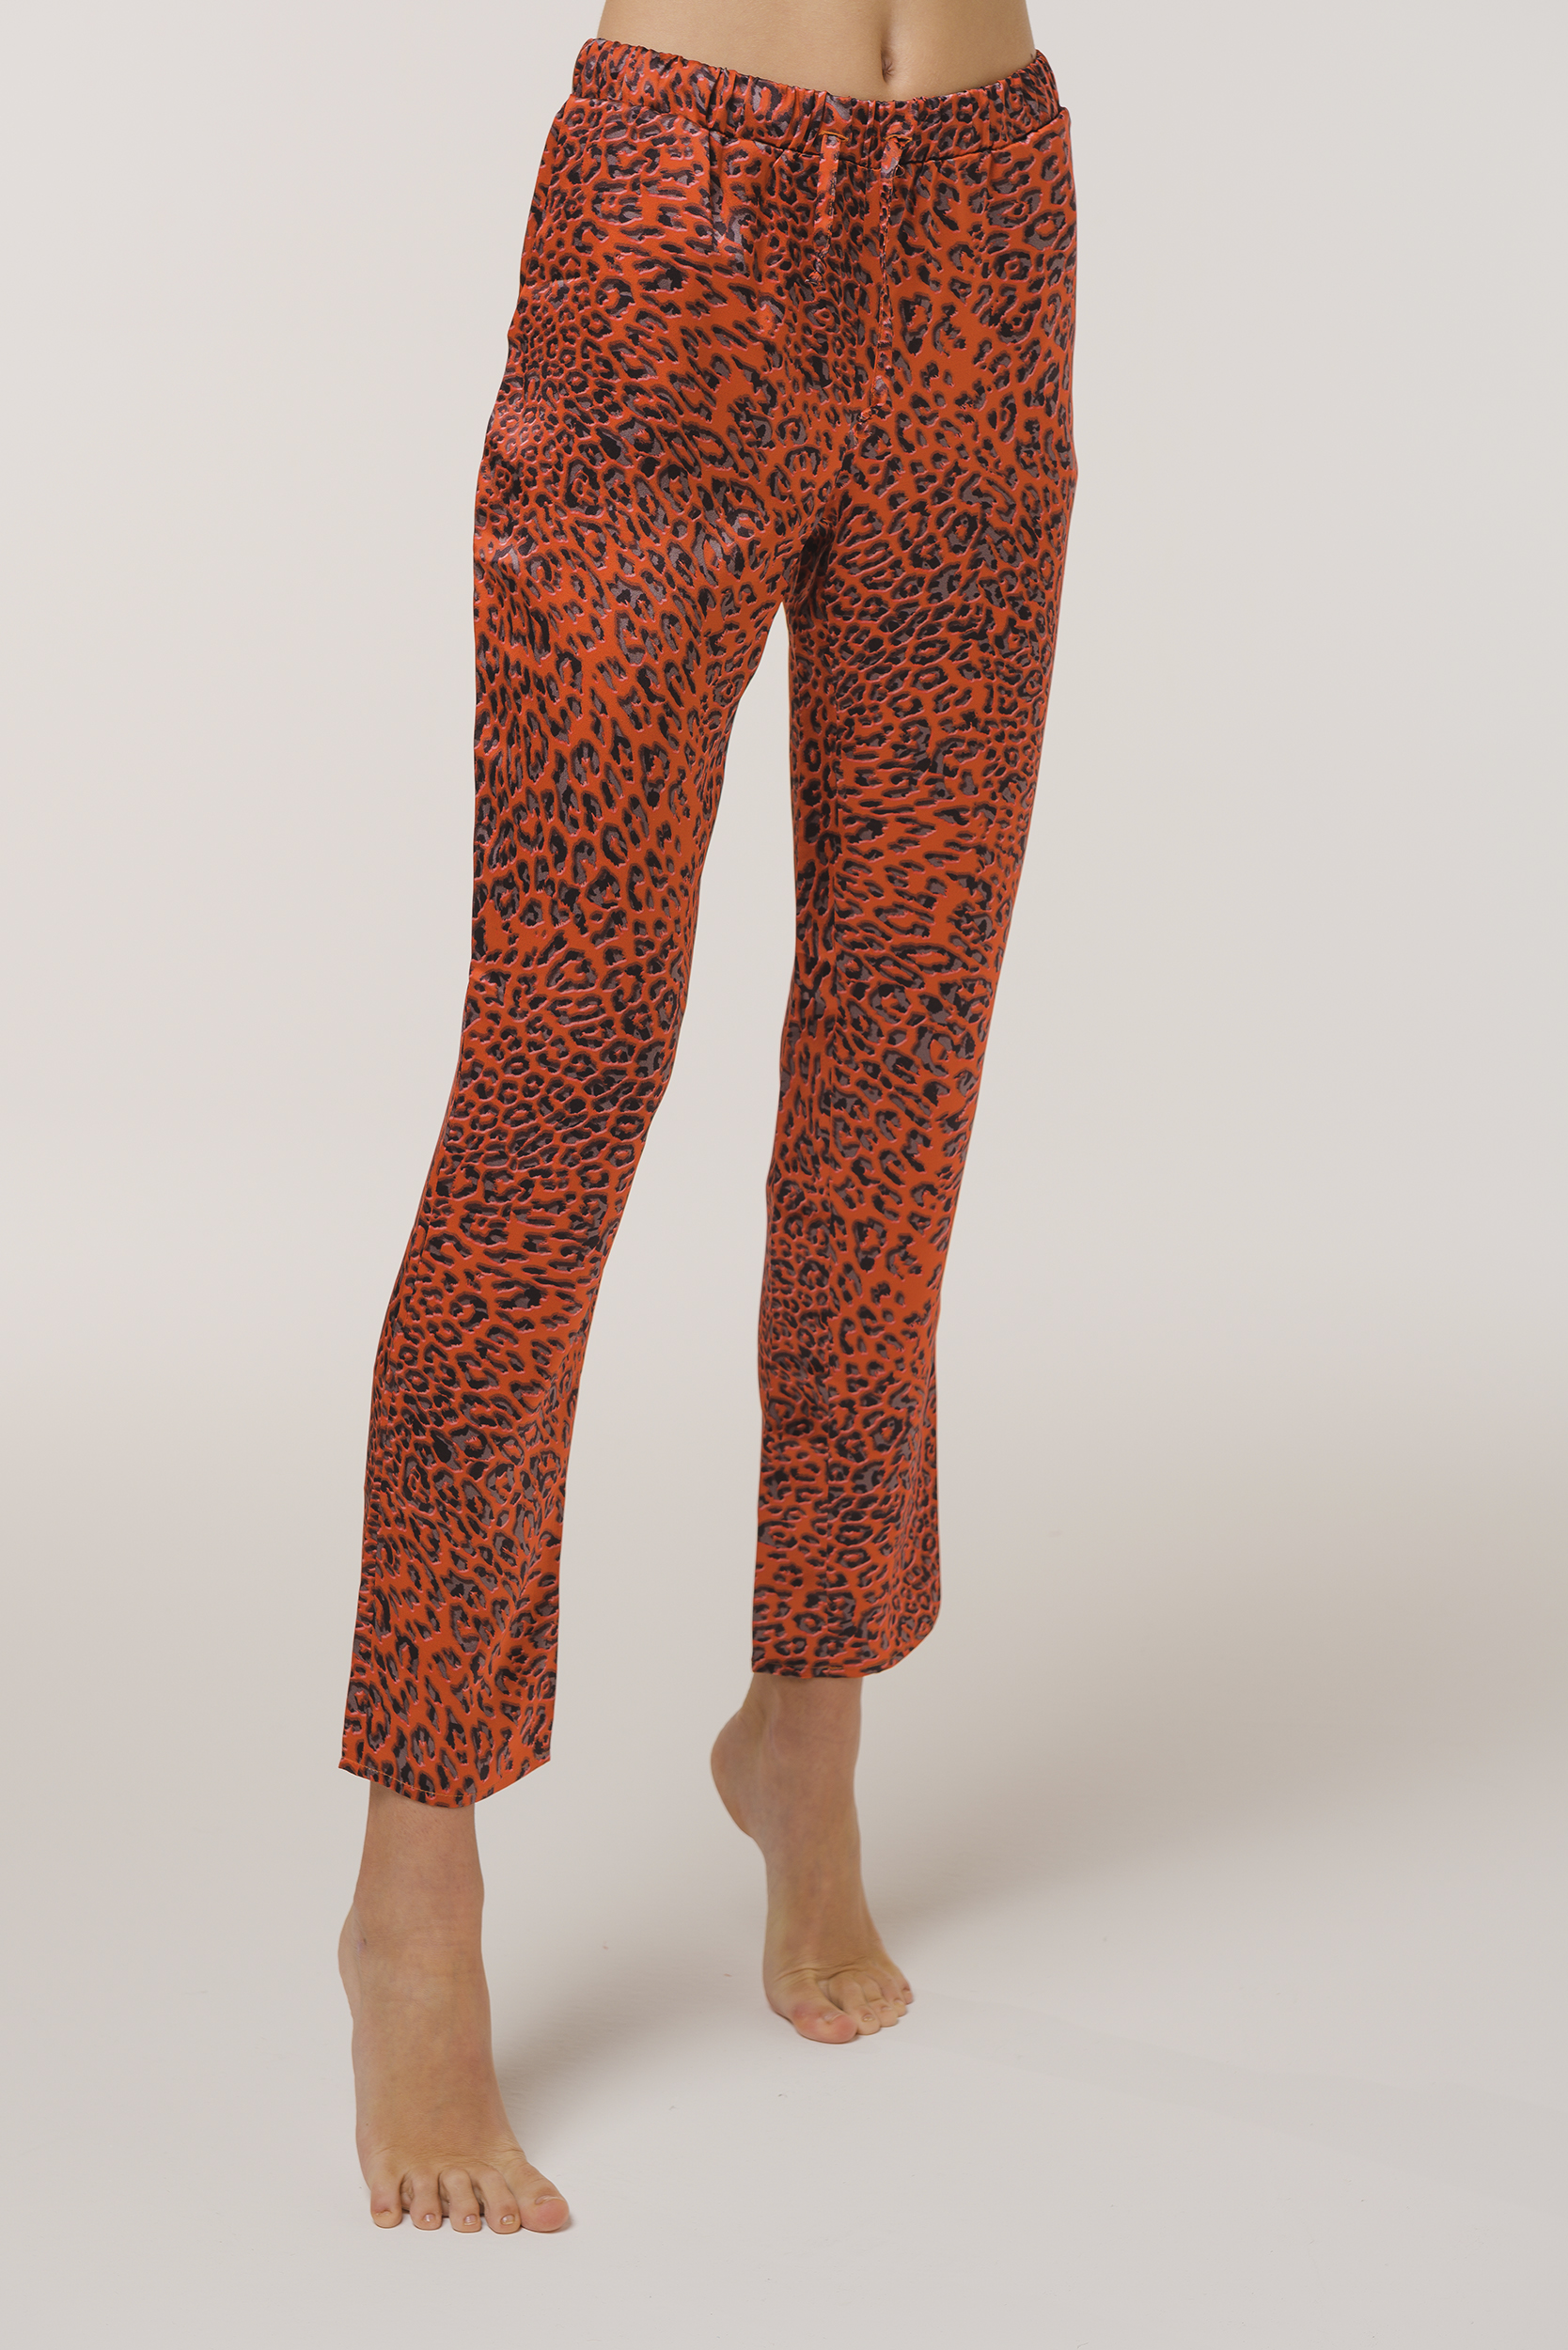 Pajamas Leopard Print